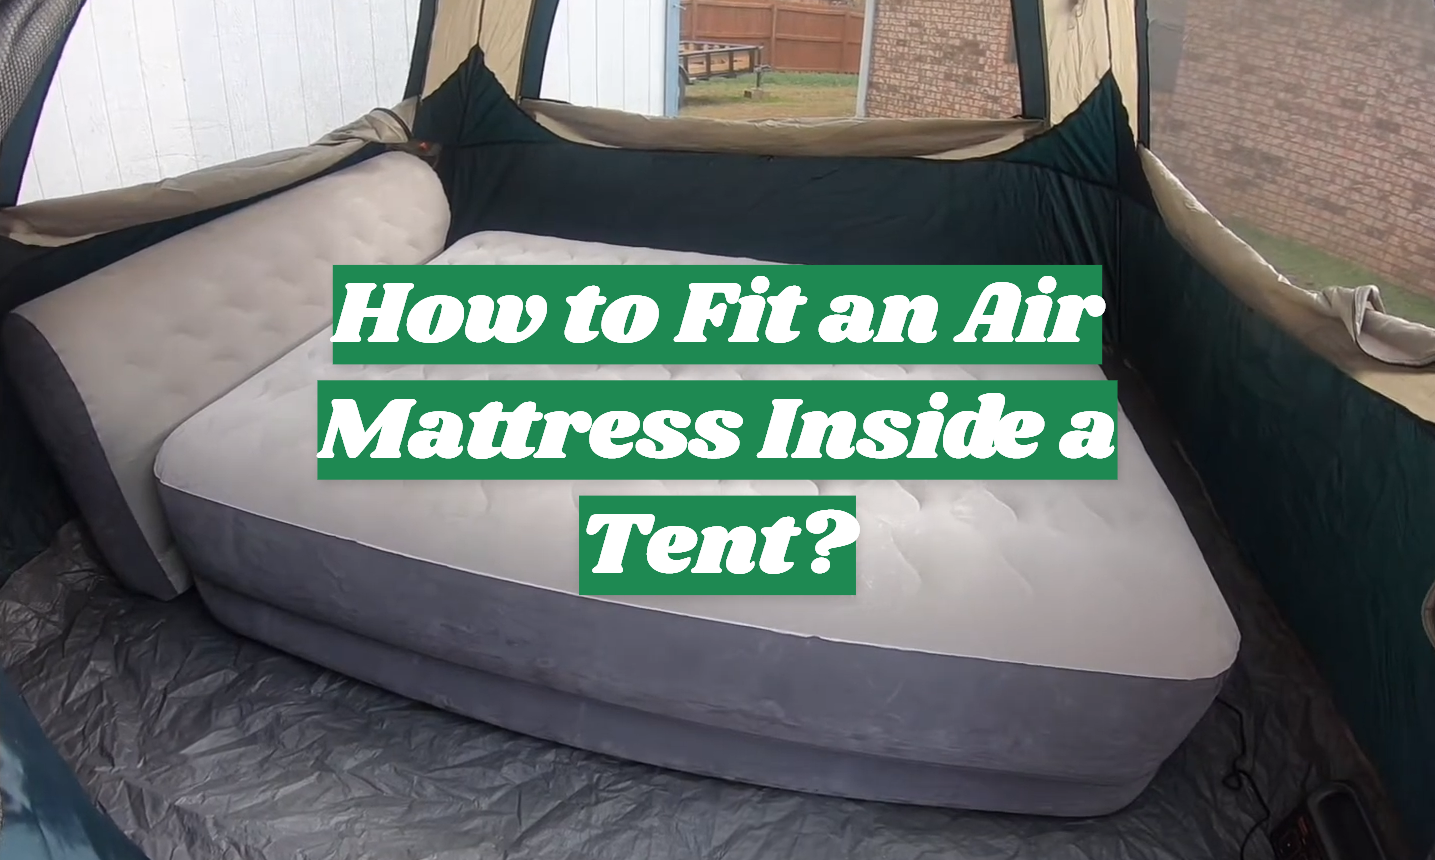 How to Fit an Air Mattress Inside a Tent?